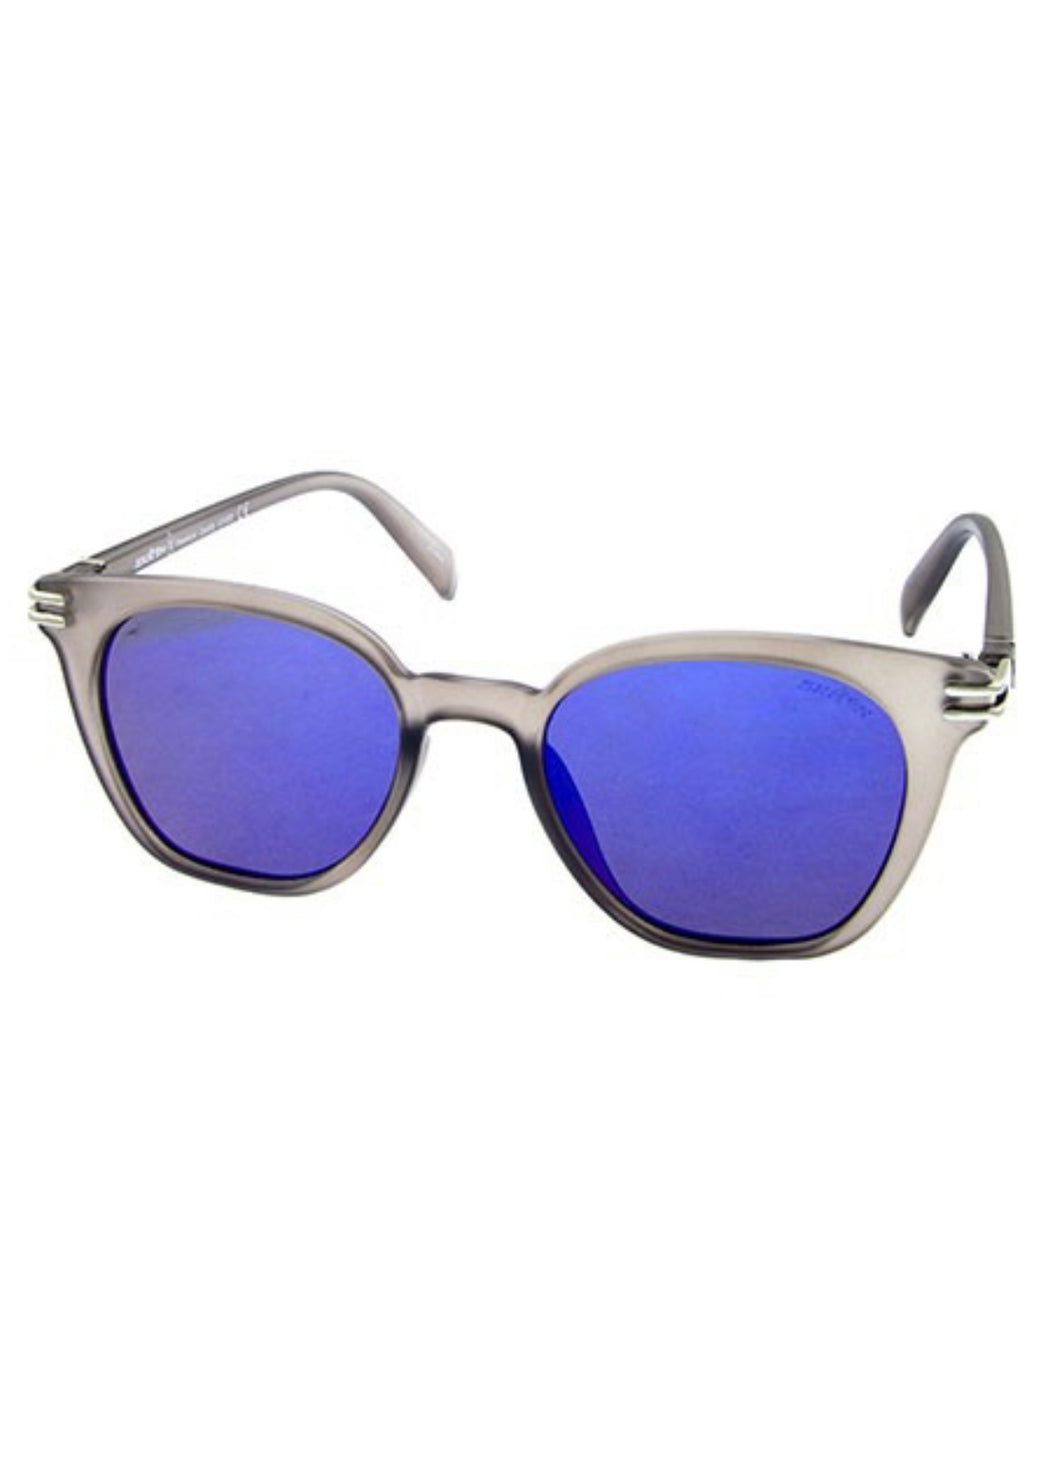 Pop Style Blue Lens Sunglasses